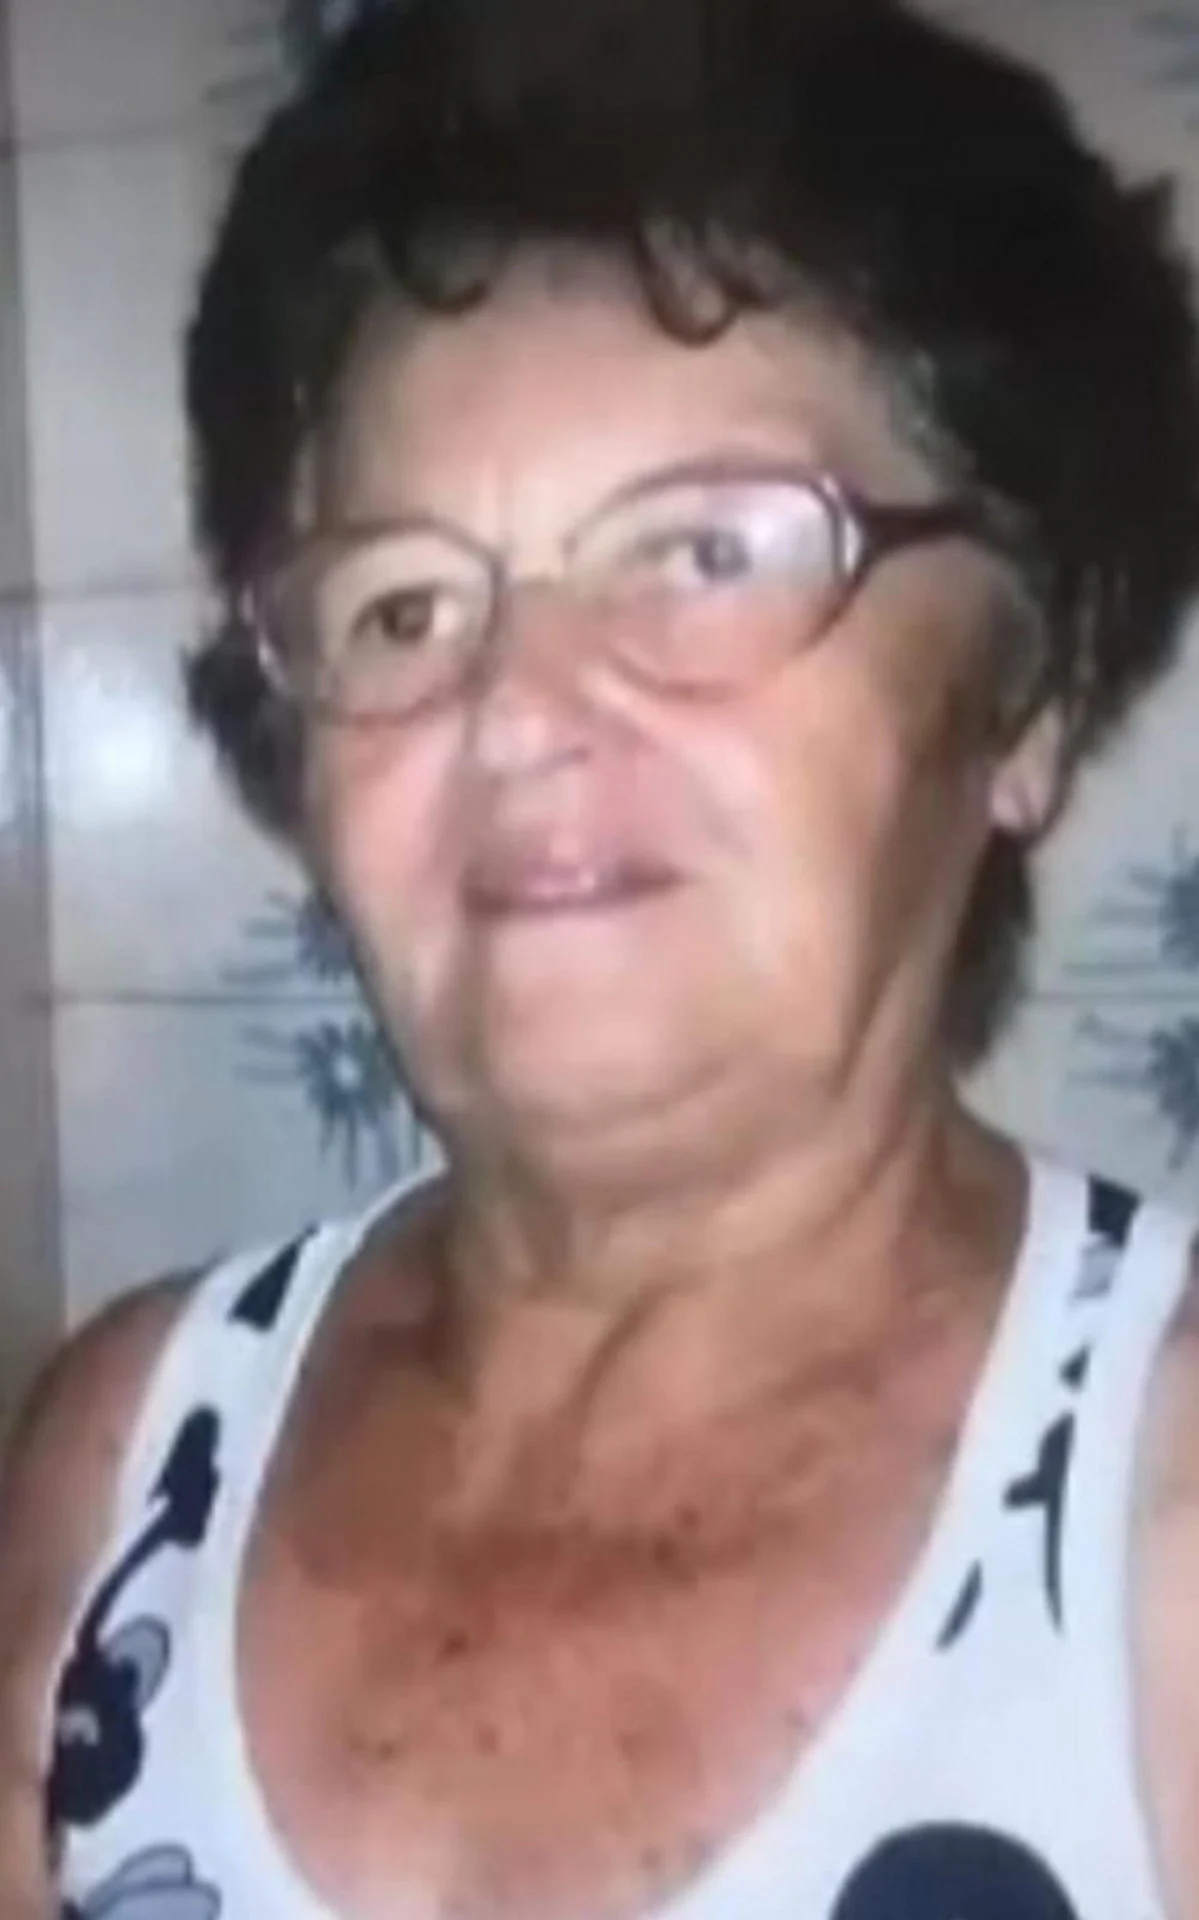 Corpo de idosa desaparecida é encontrado na Baía de Guanabara